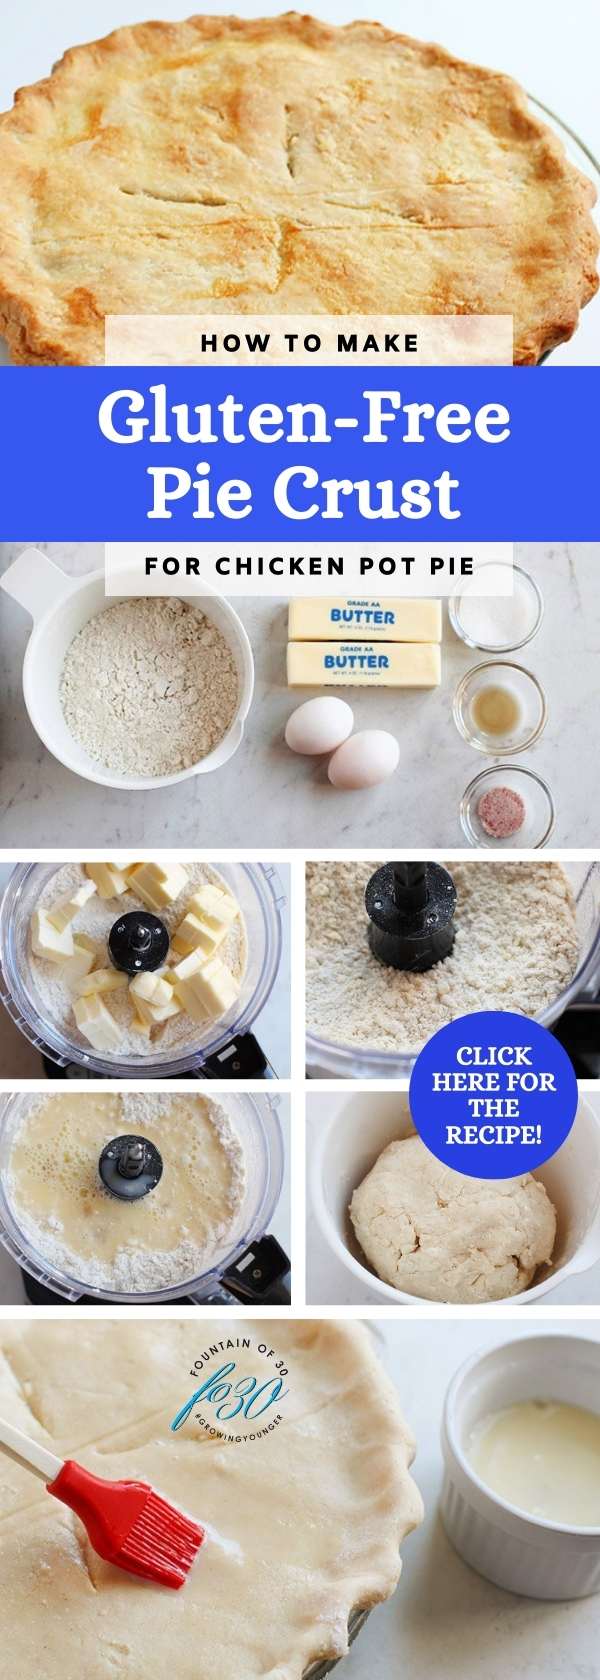 gluten free pie crust and chicken pot pie recipes fountainof30